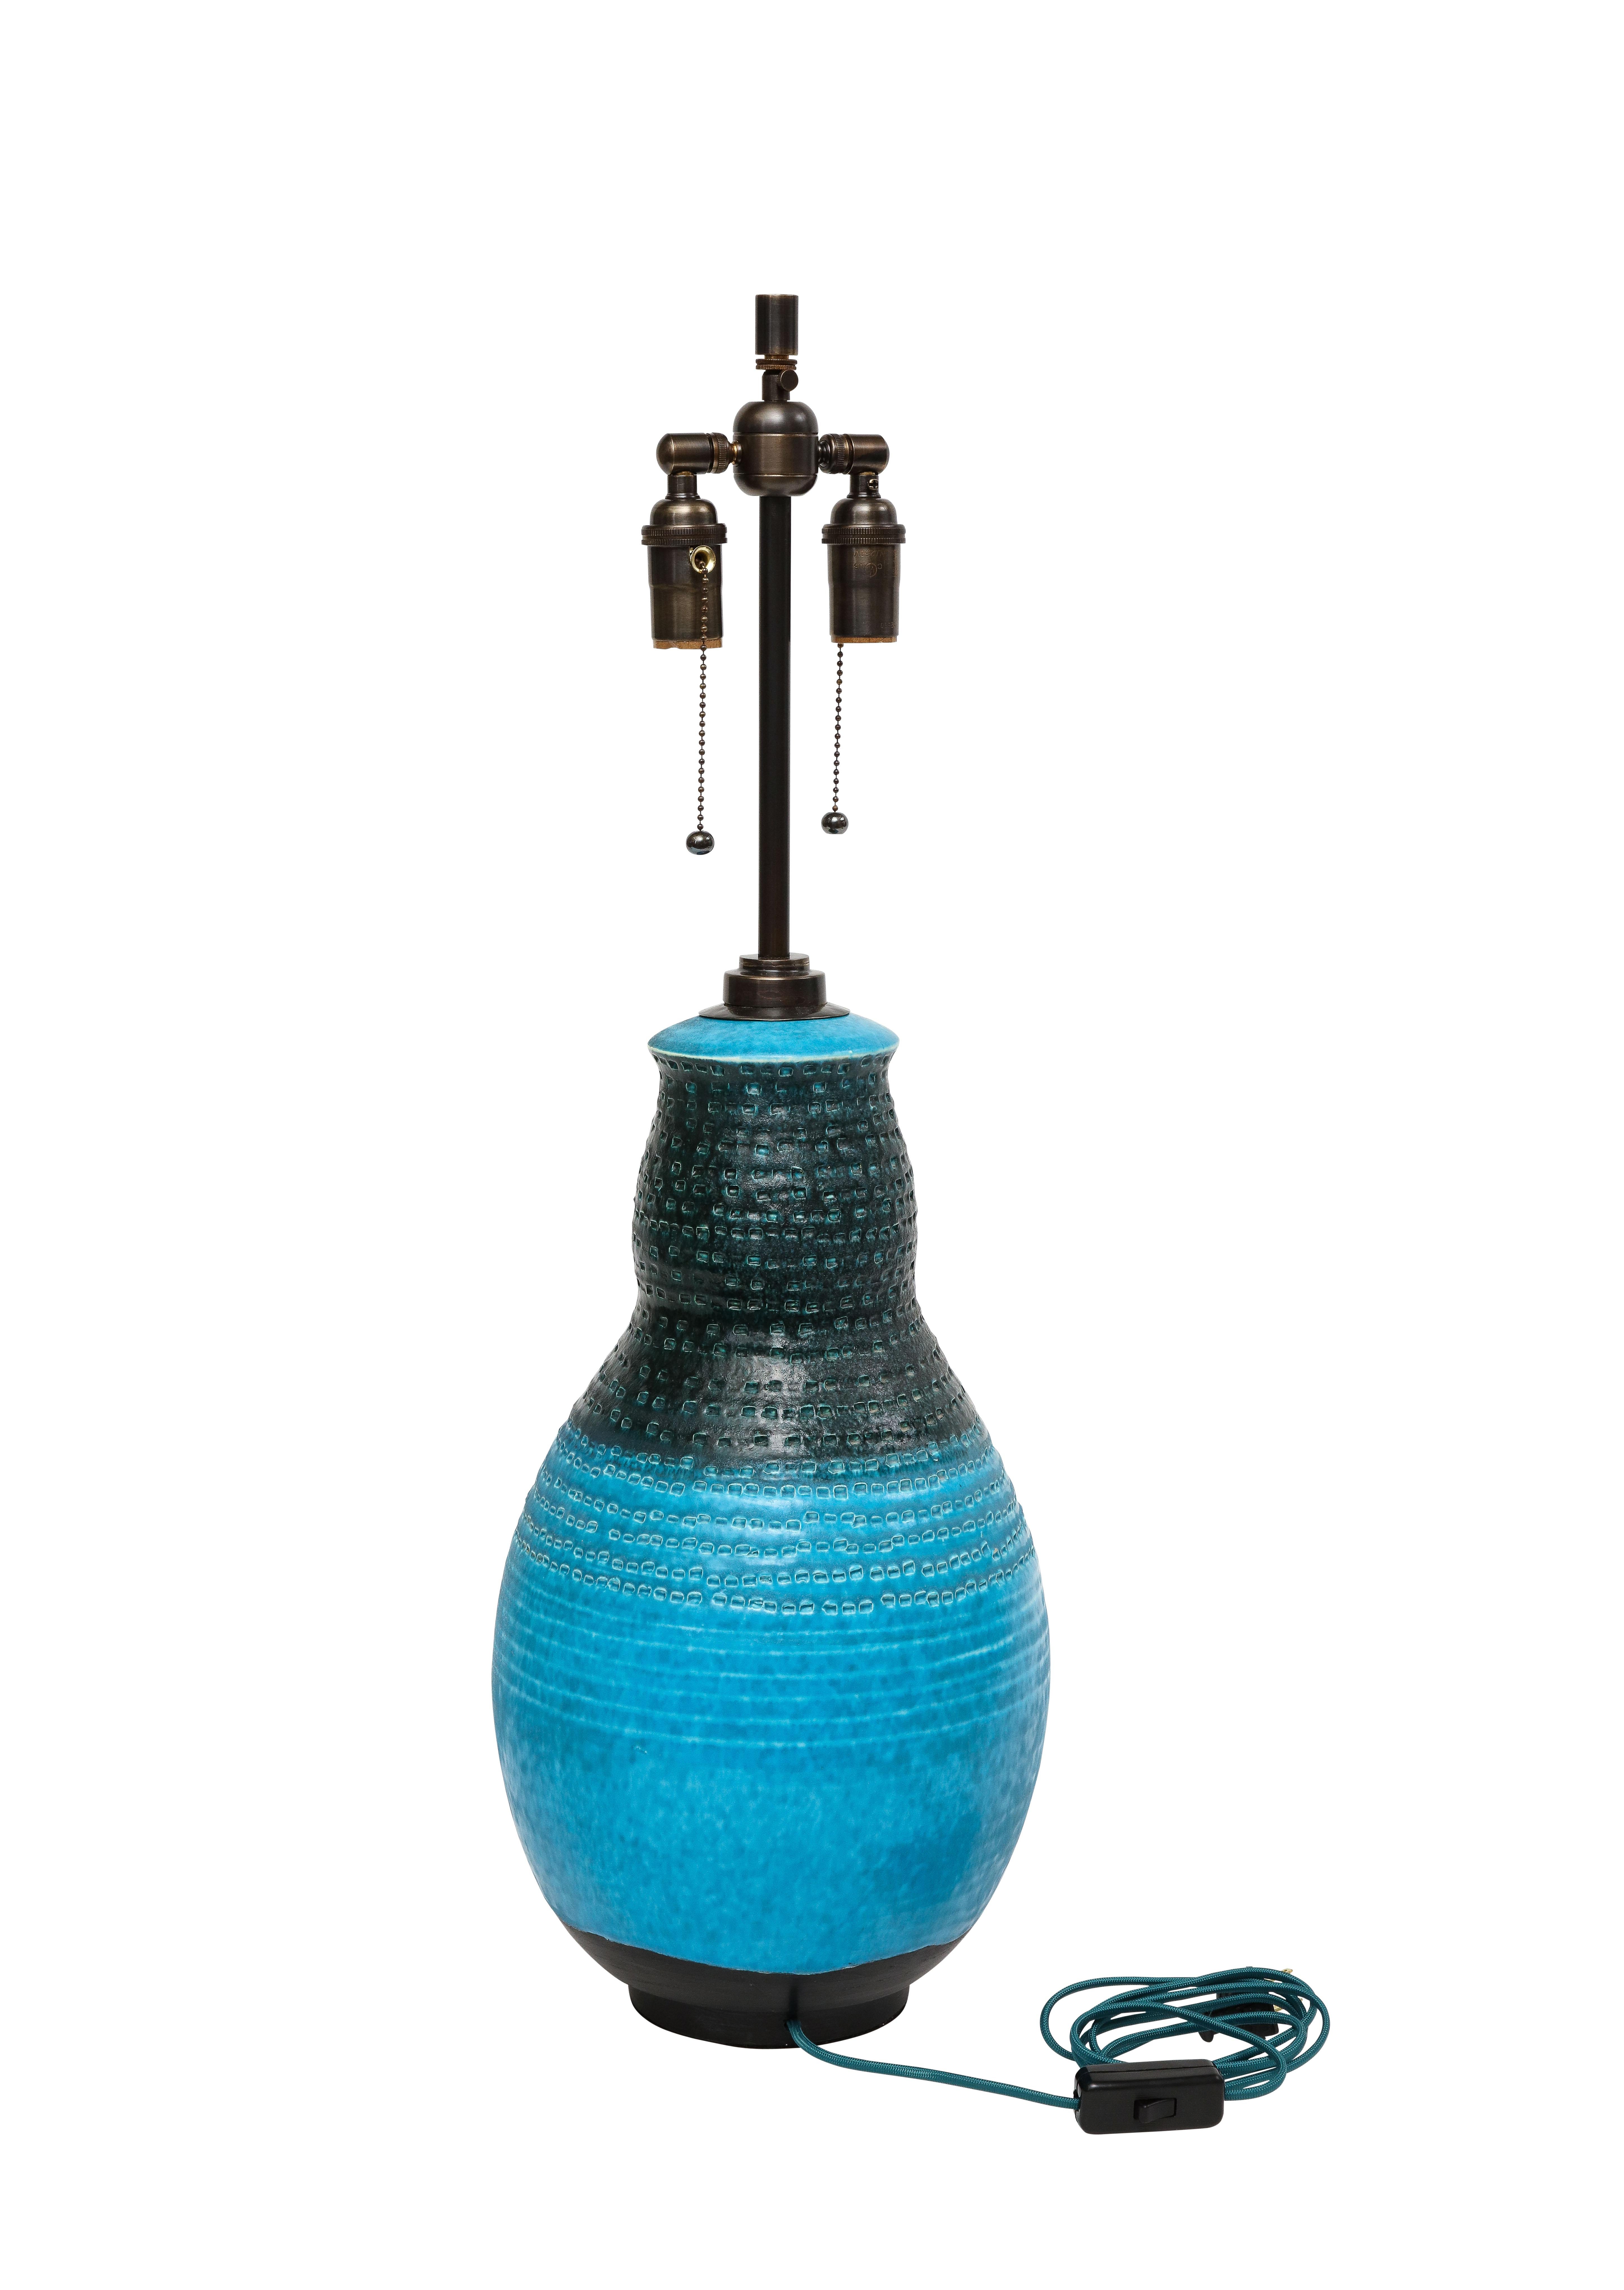 Alvino Bagni Table Lamp, Ceramic, Blue, Black, Impressed 2